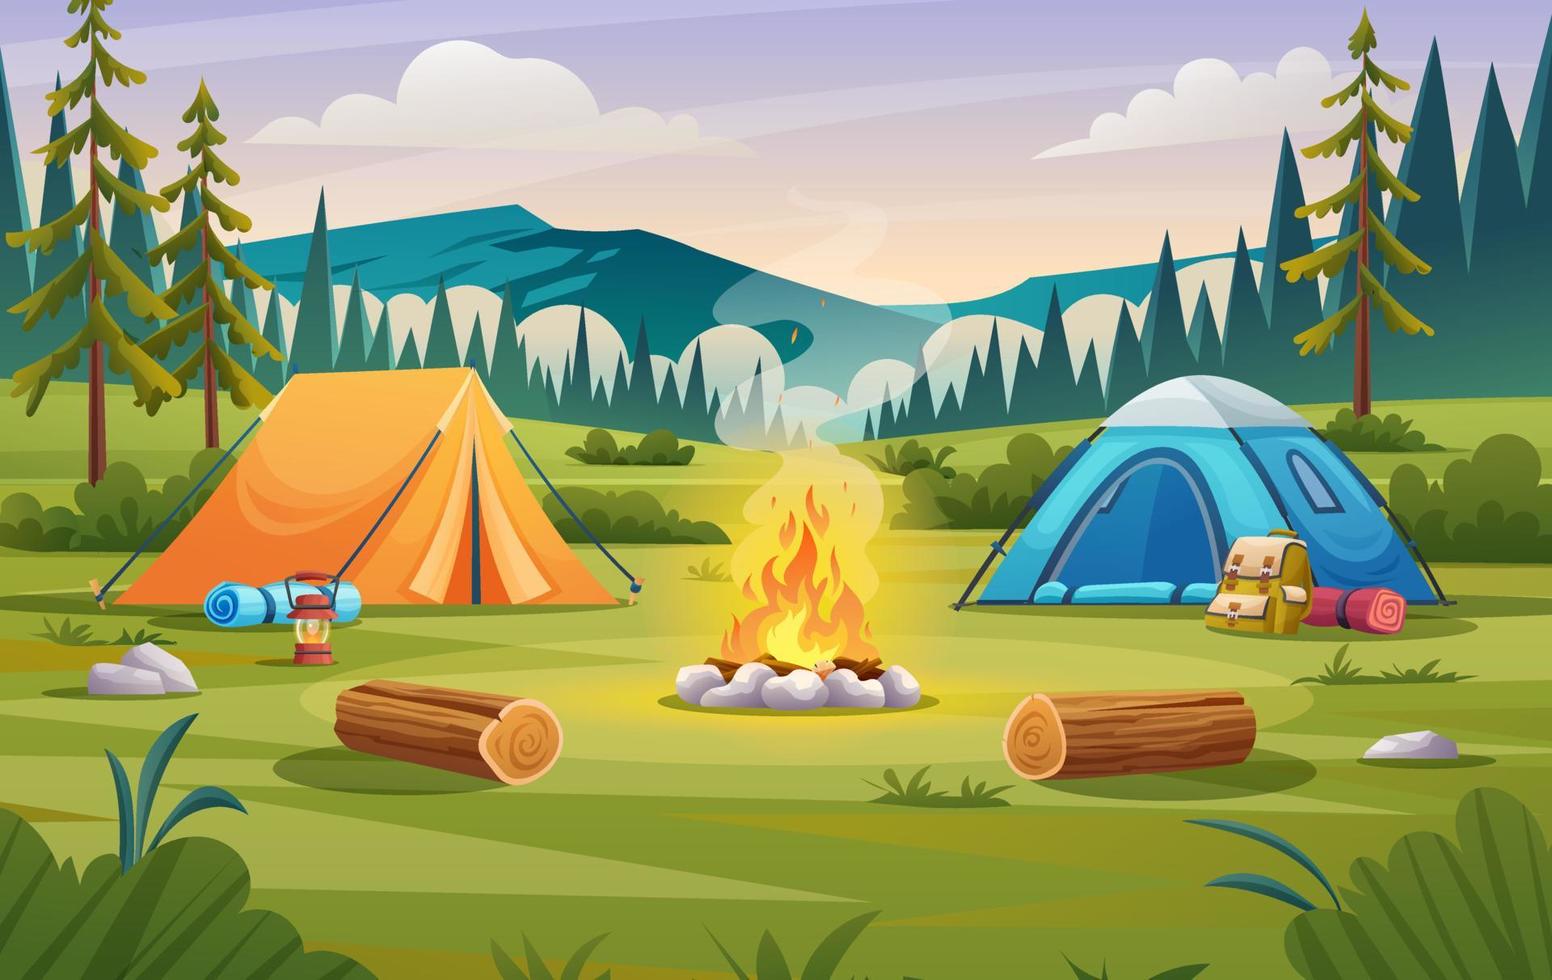 naturlägerlandskap med tält, lägereld, ryggsäck och tecknad lyktaillustration vektor